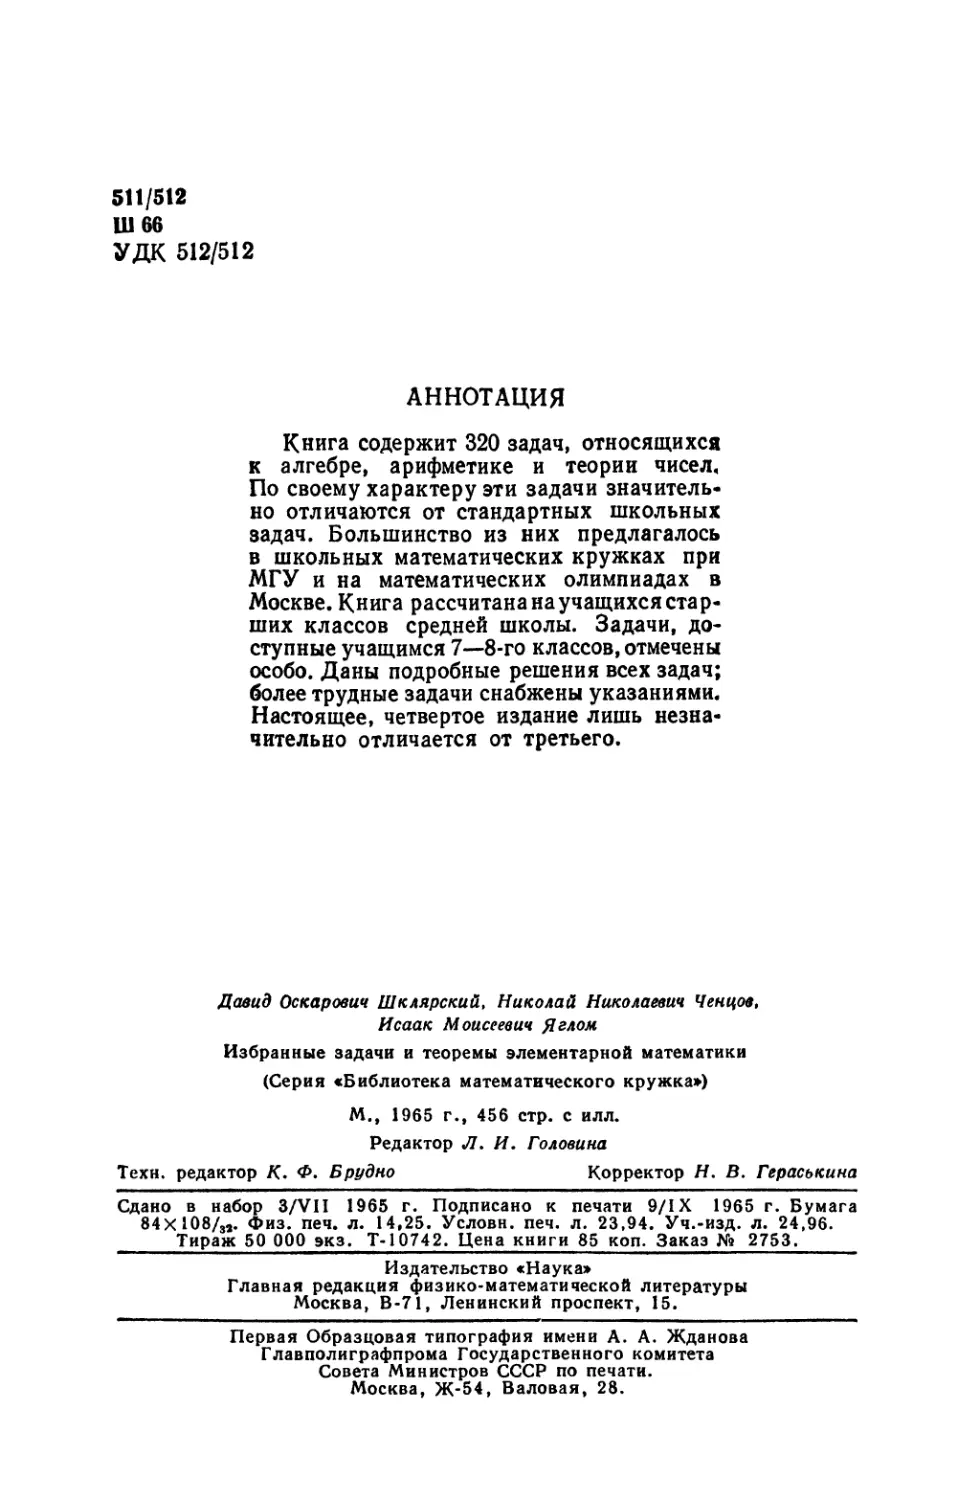 Аннотация
Выходные данные
Номера задач, предлагавшихся на московских математических олимпиадах